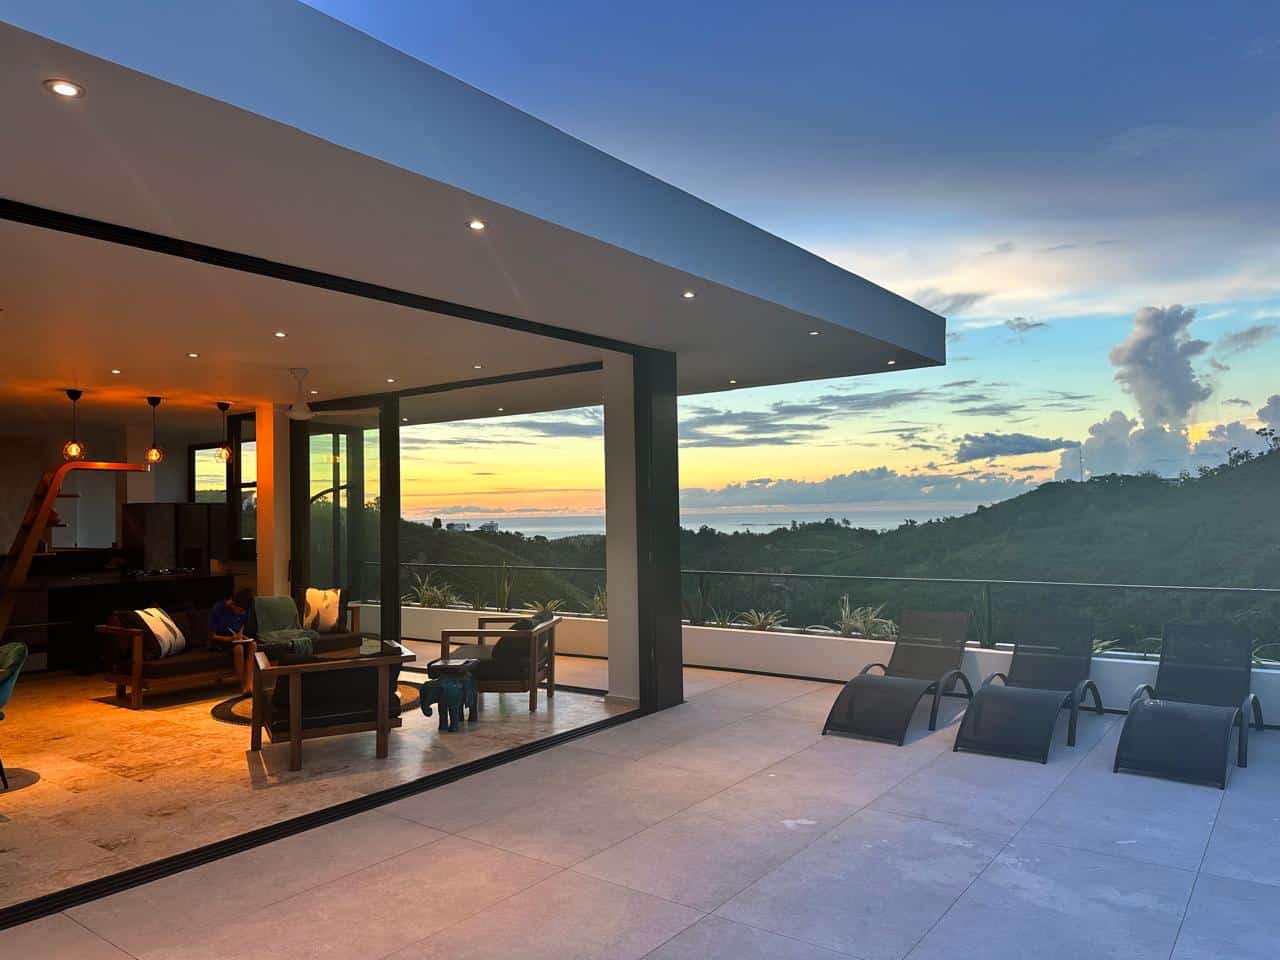 Splendid 4-bedroom villa with ocean vista - Las Terrenas Real Estate - Ocean Edge Dominican Republic (12)